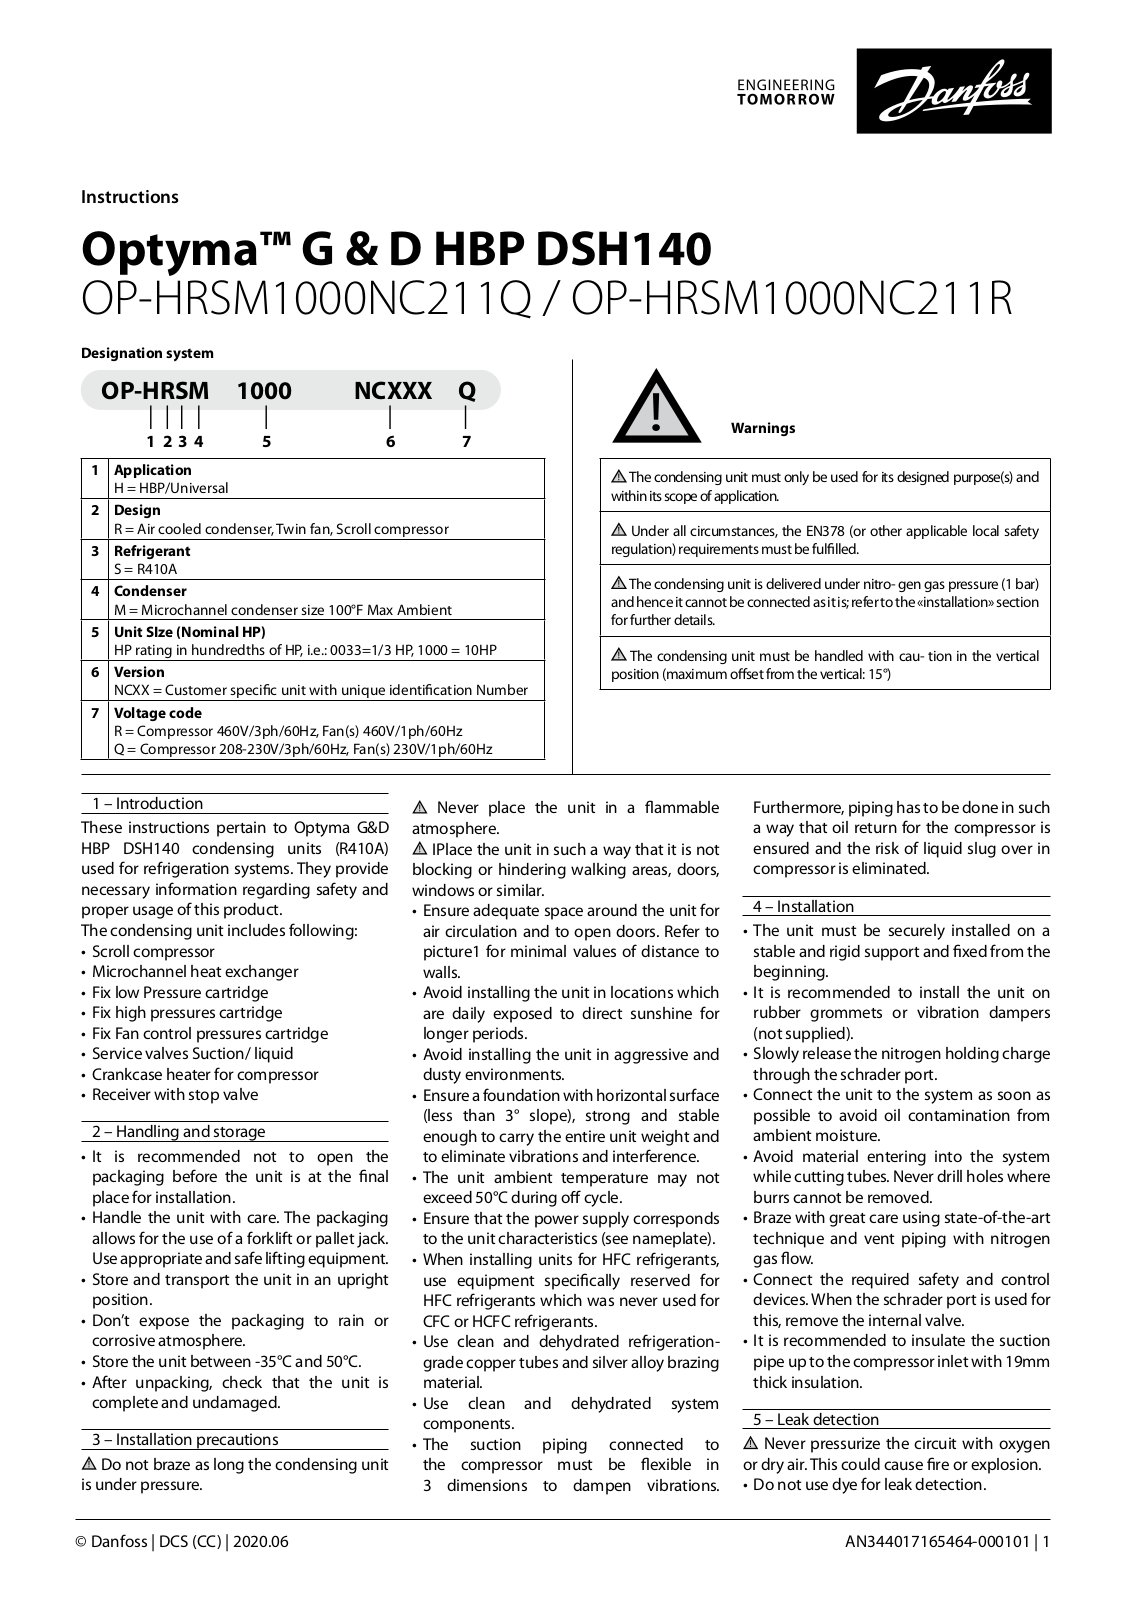 Danfoss OP-HRSM1000NC211Q, OP-HRSM1000NC211R Installation guide